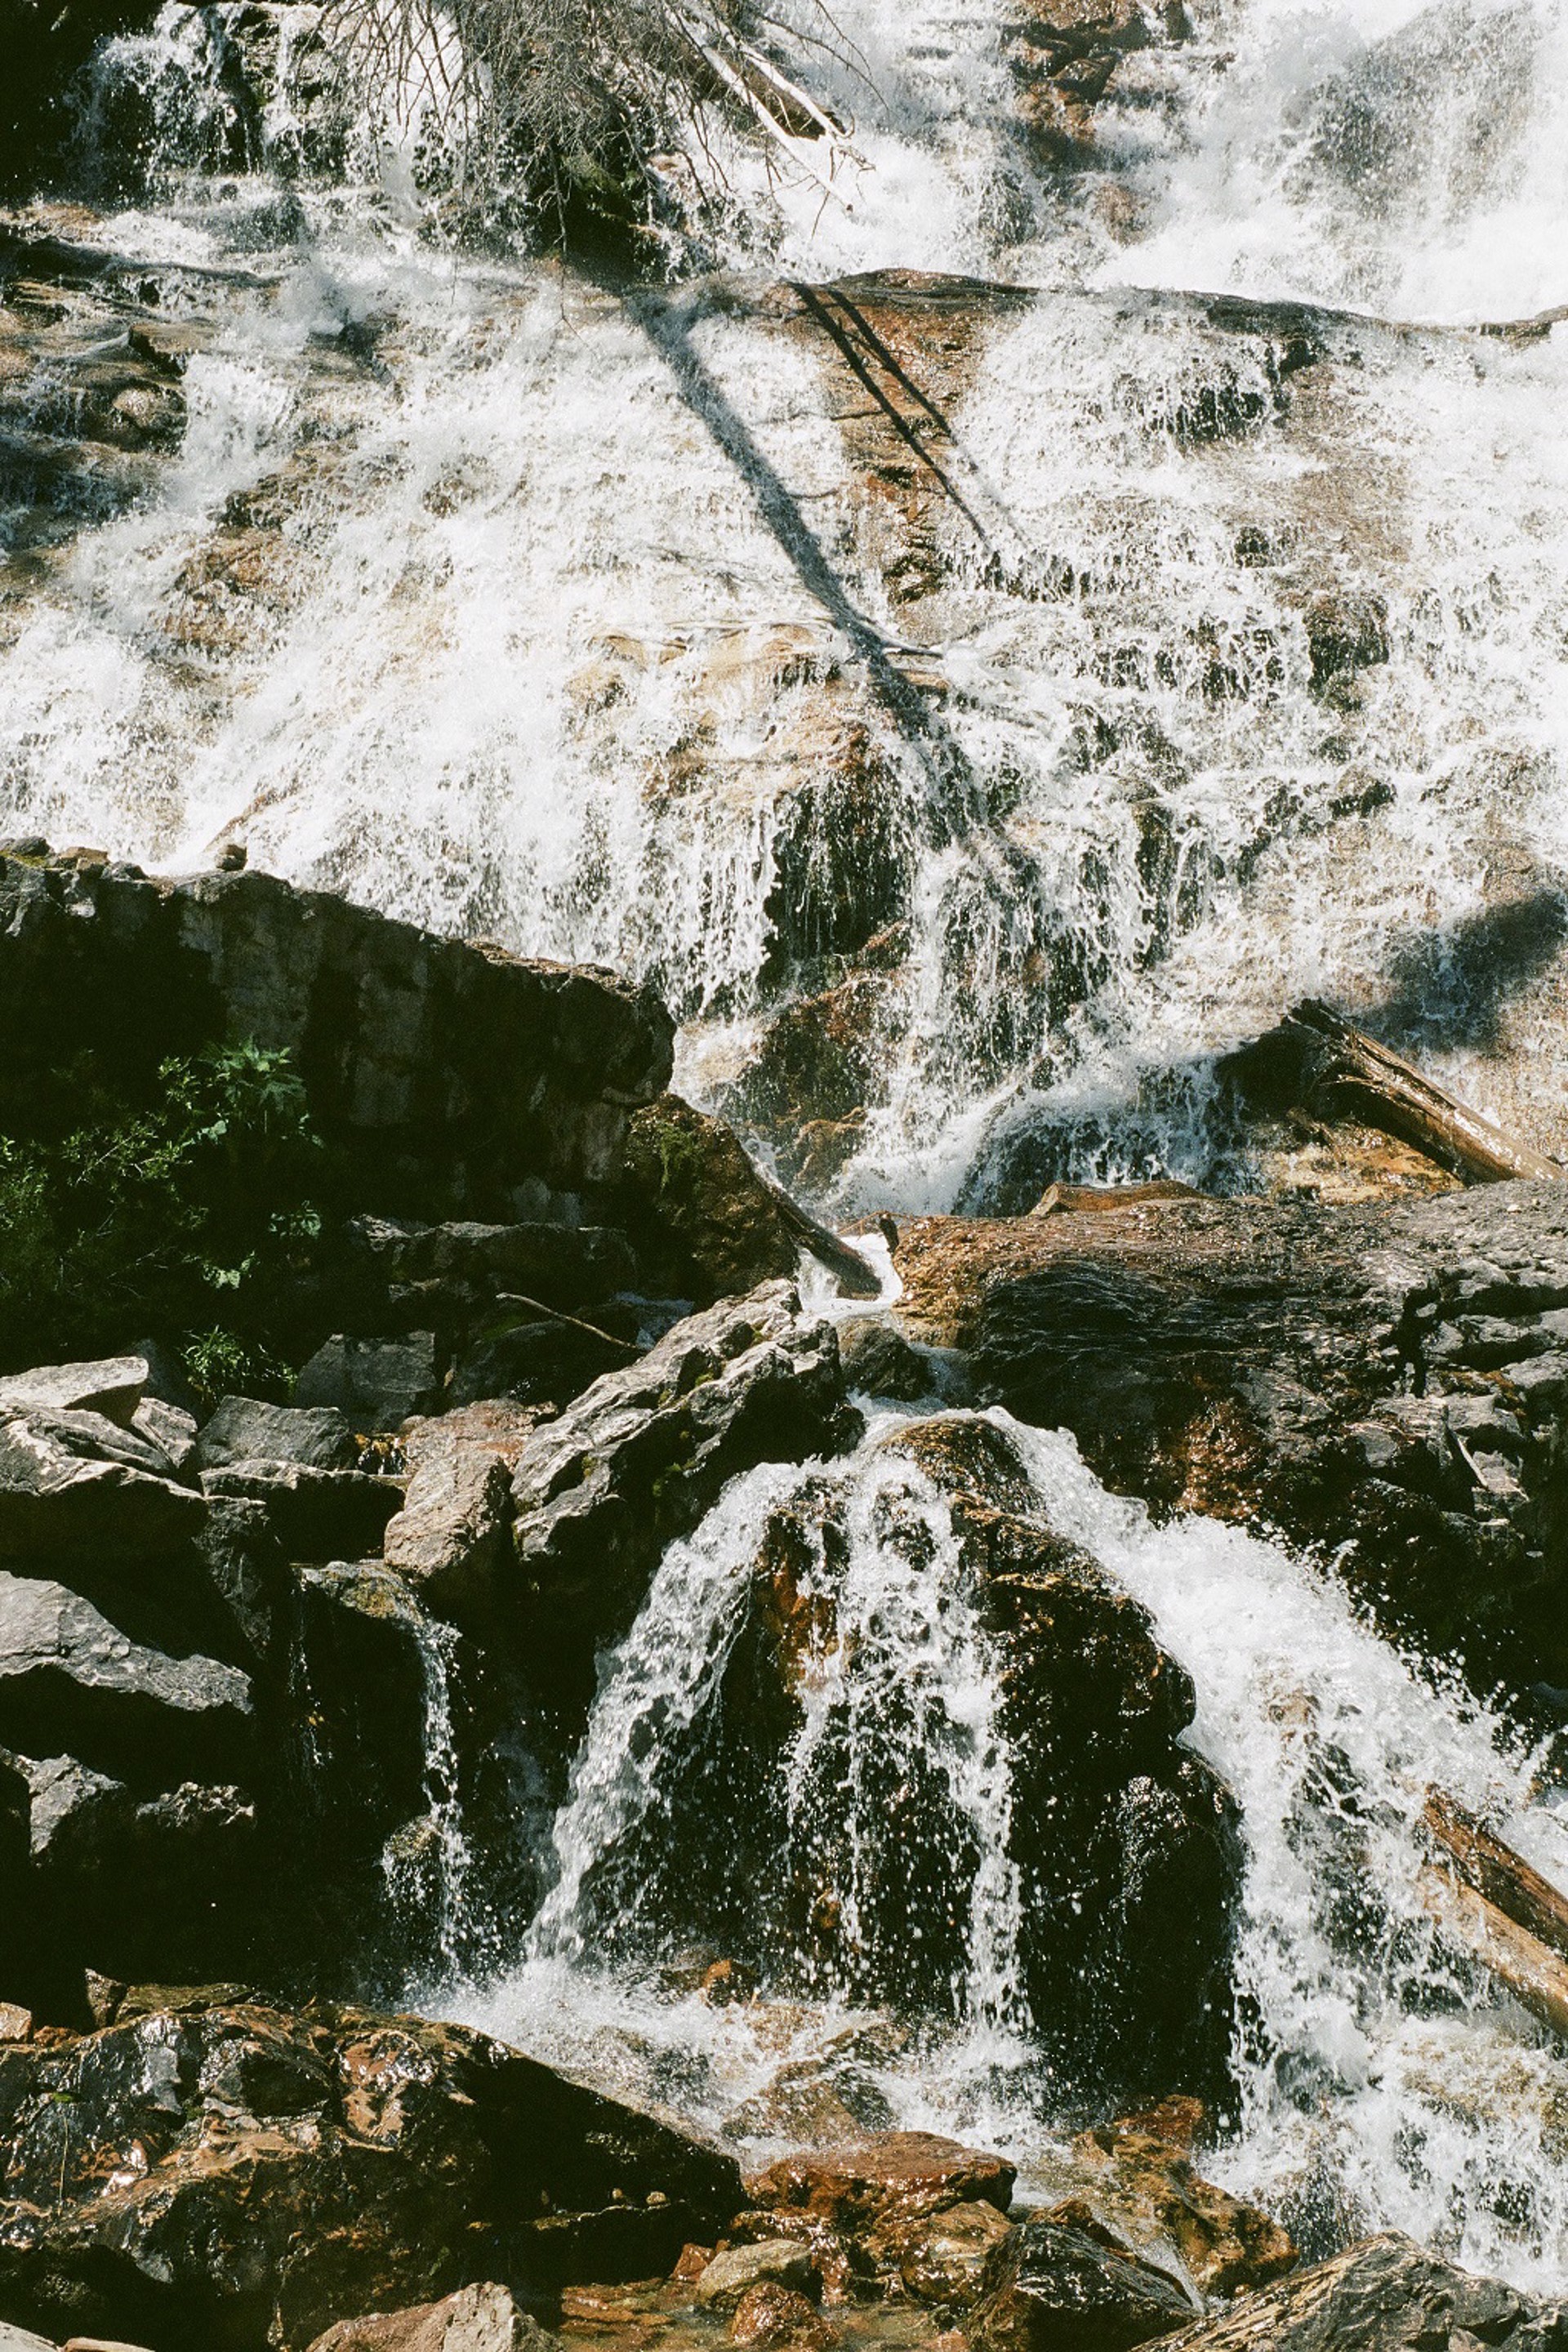 Skalkaho Falls Abstracted by Teysha Vinson